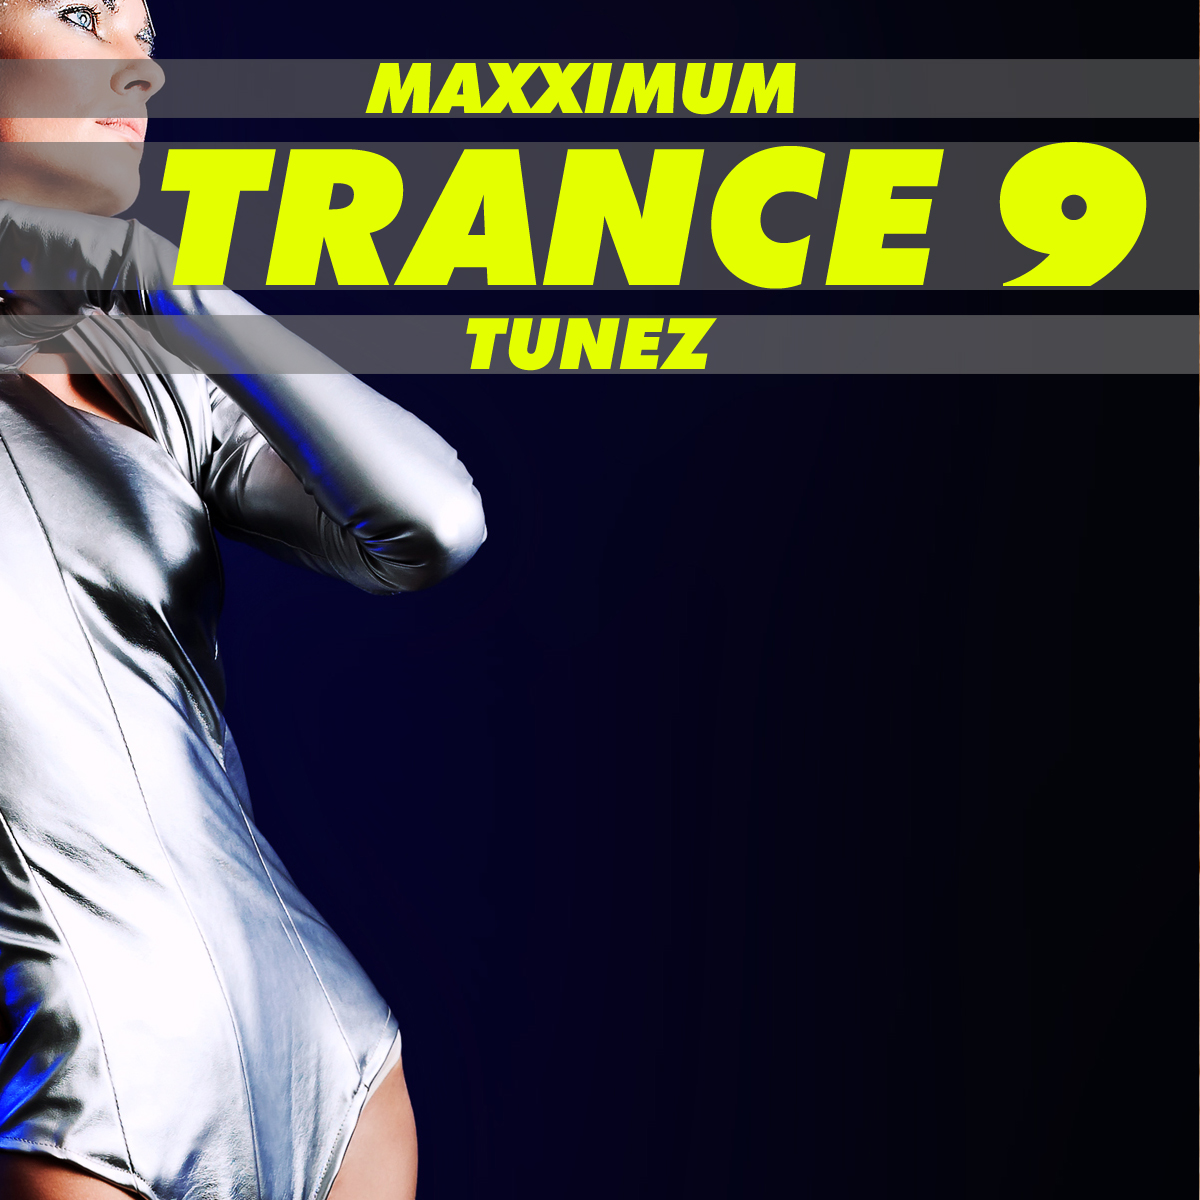 Maxximum Trance Tunes, Vol. 9